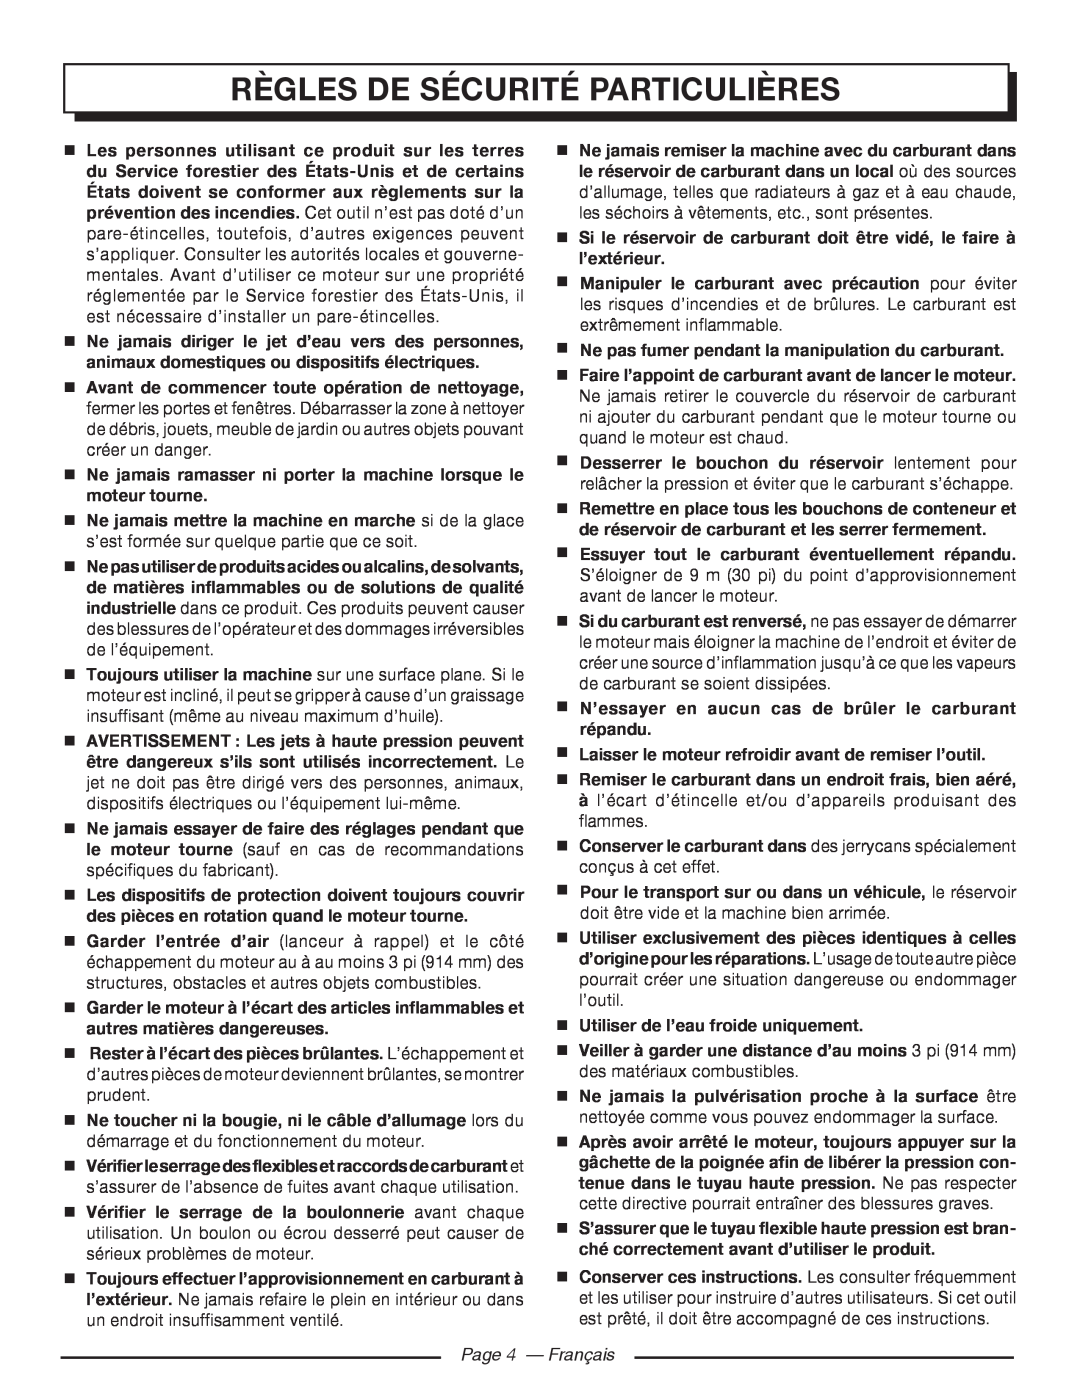 Homelite UT80522, UT80953 manuel dutilisation Règles De Sécurité Particulières, Page 4 - Français 